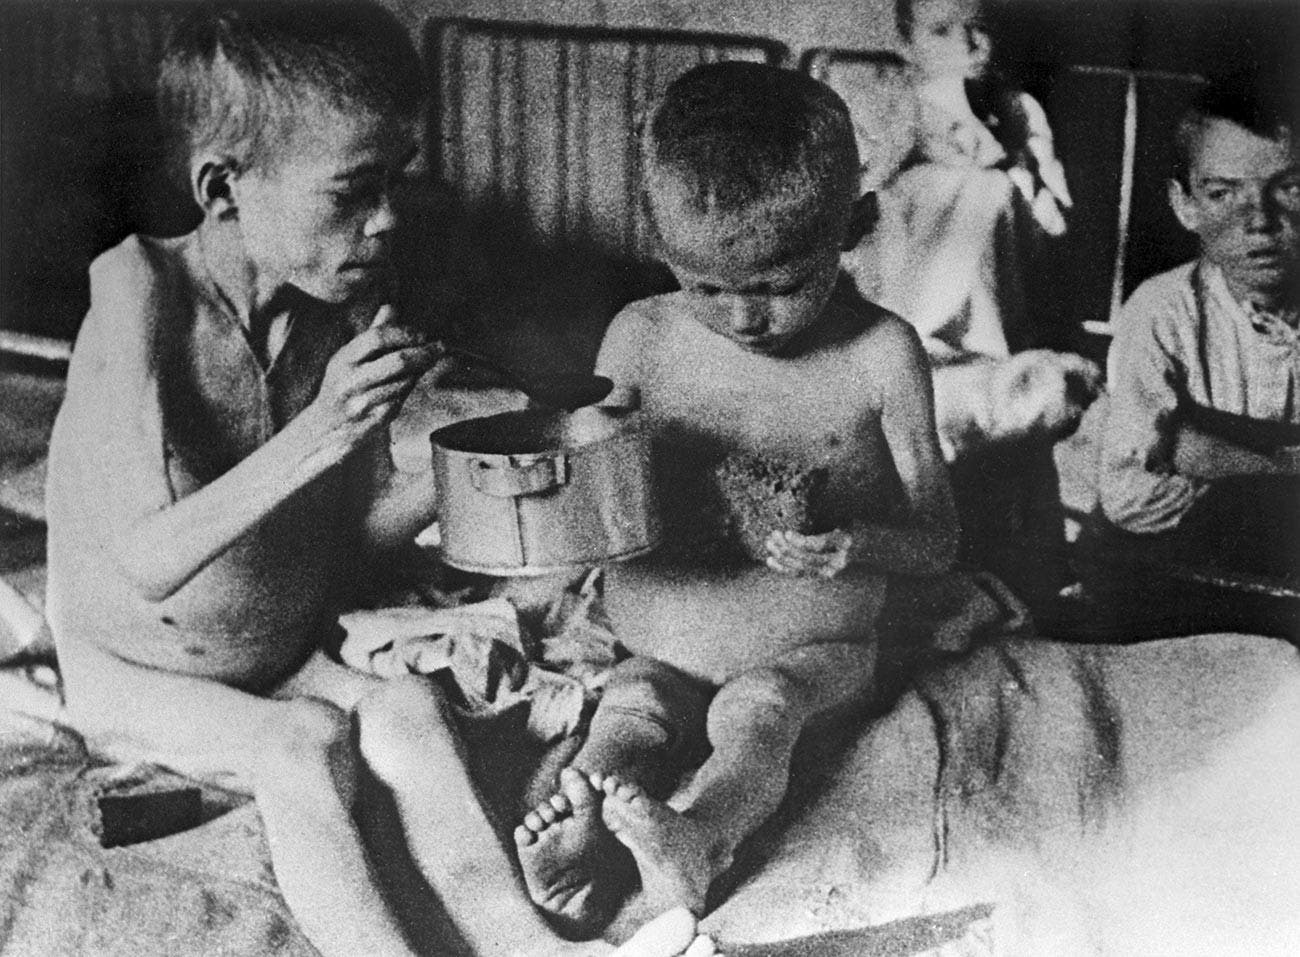 صورة لأطفال ضحايا المجاعة بالإتحاد السوفيتي